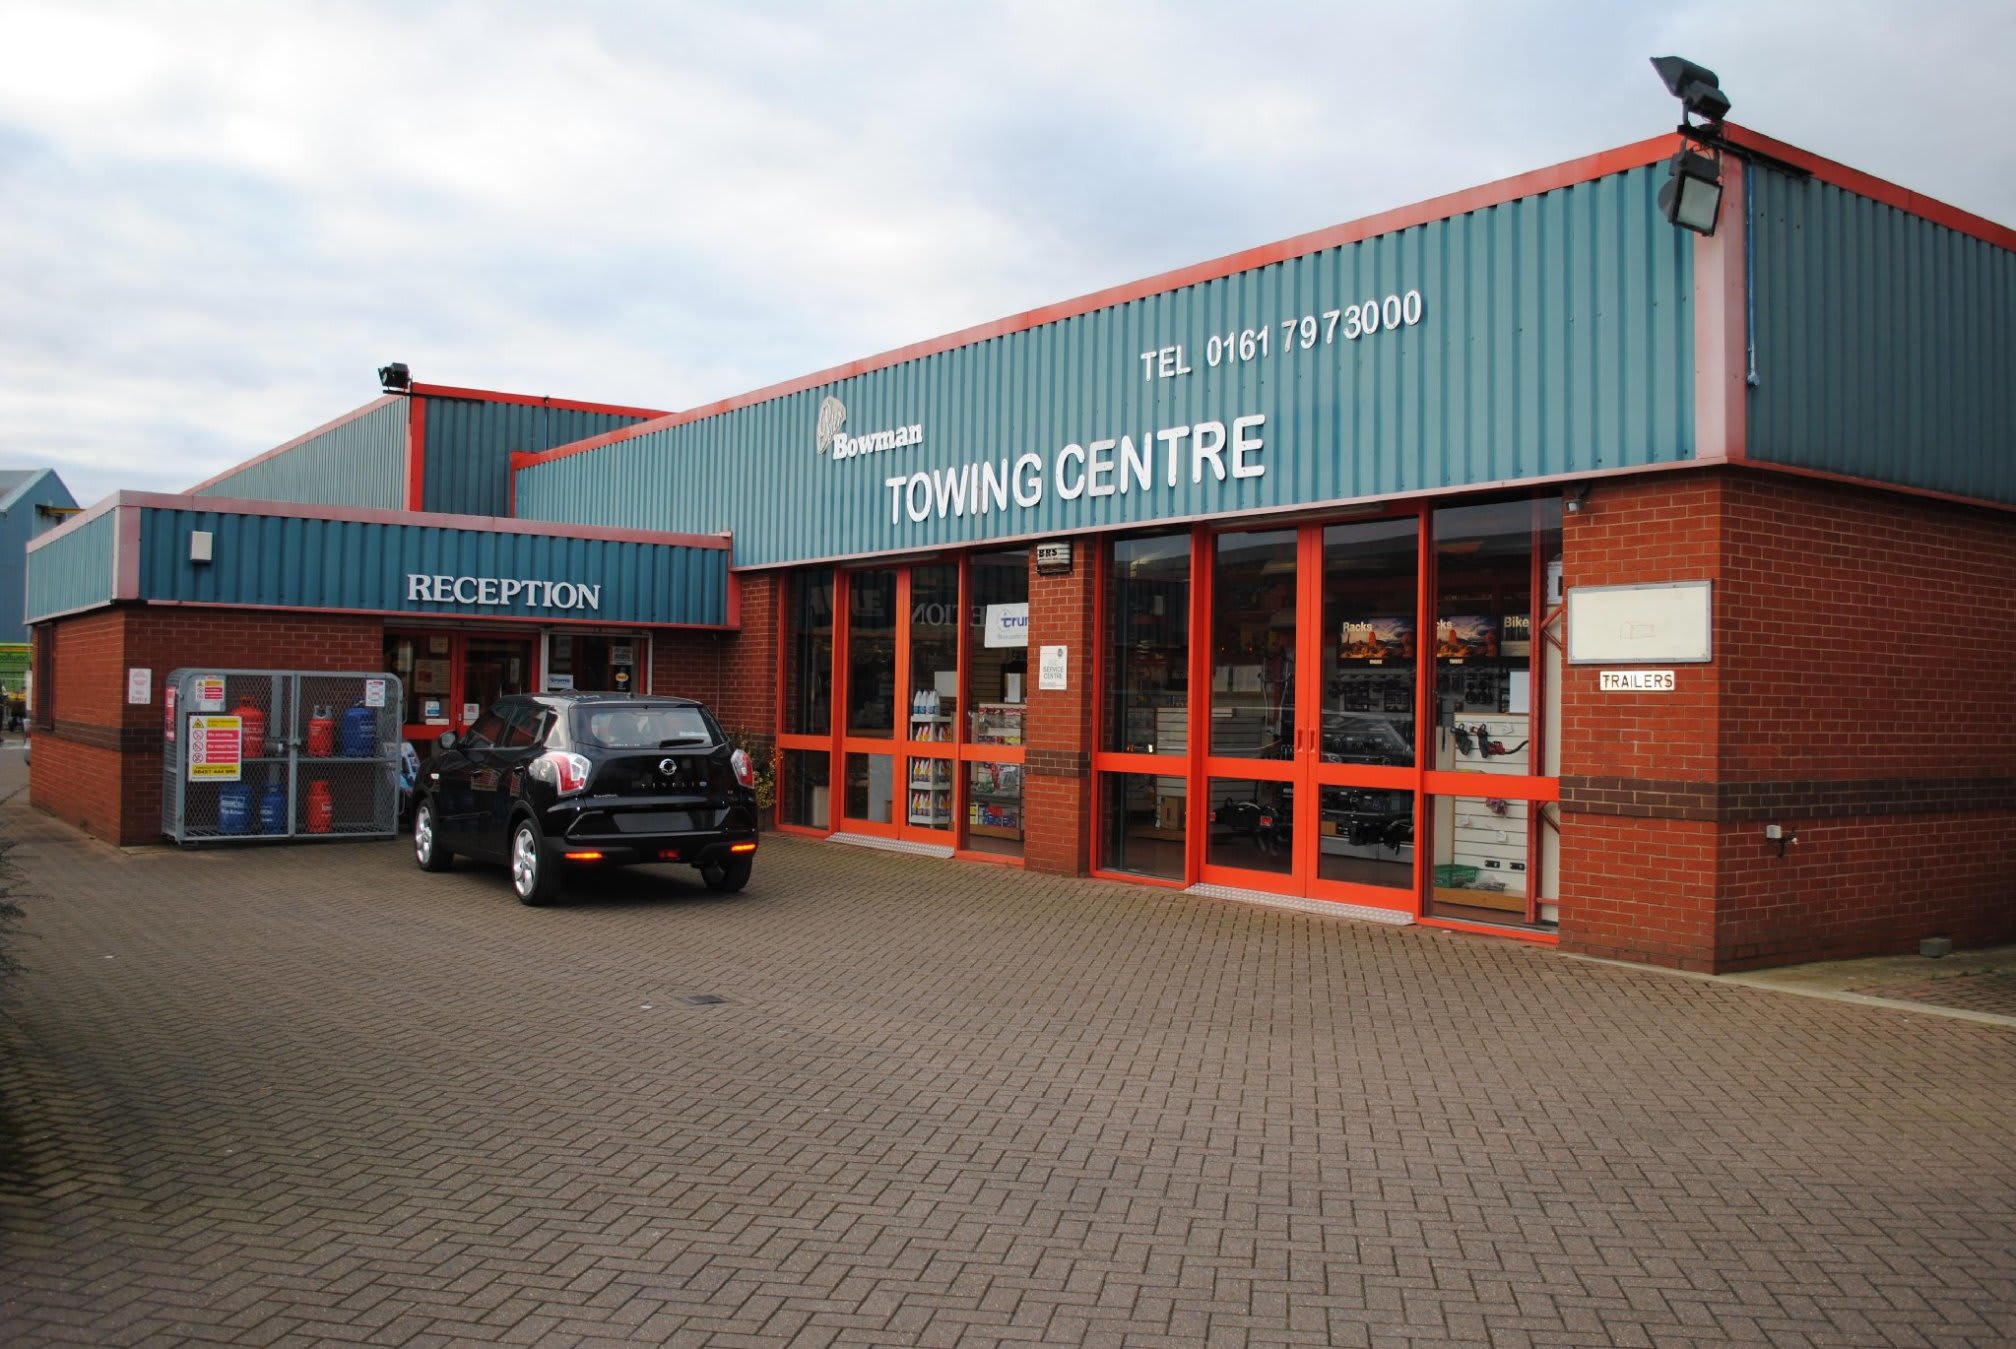 Images Peter Bowman Towing Centre Ltd